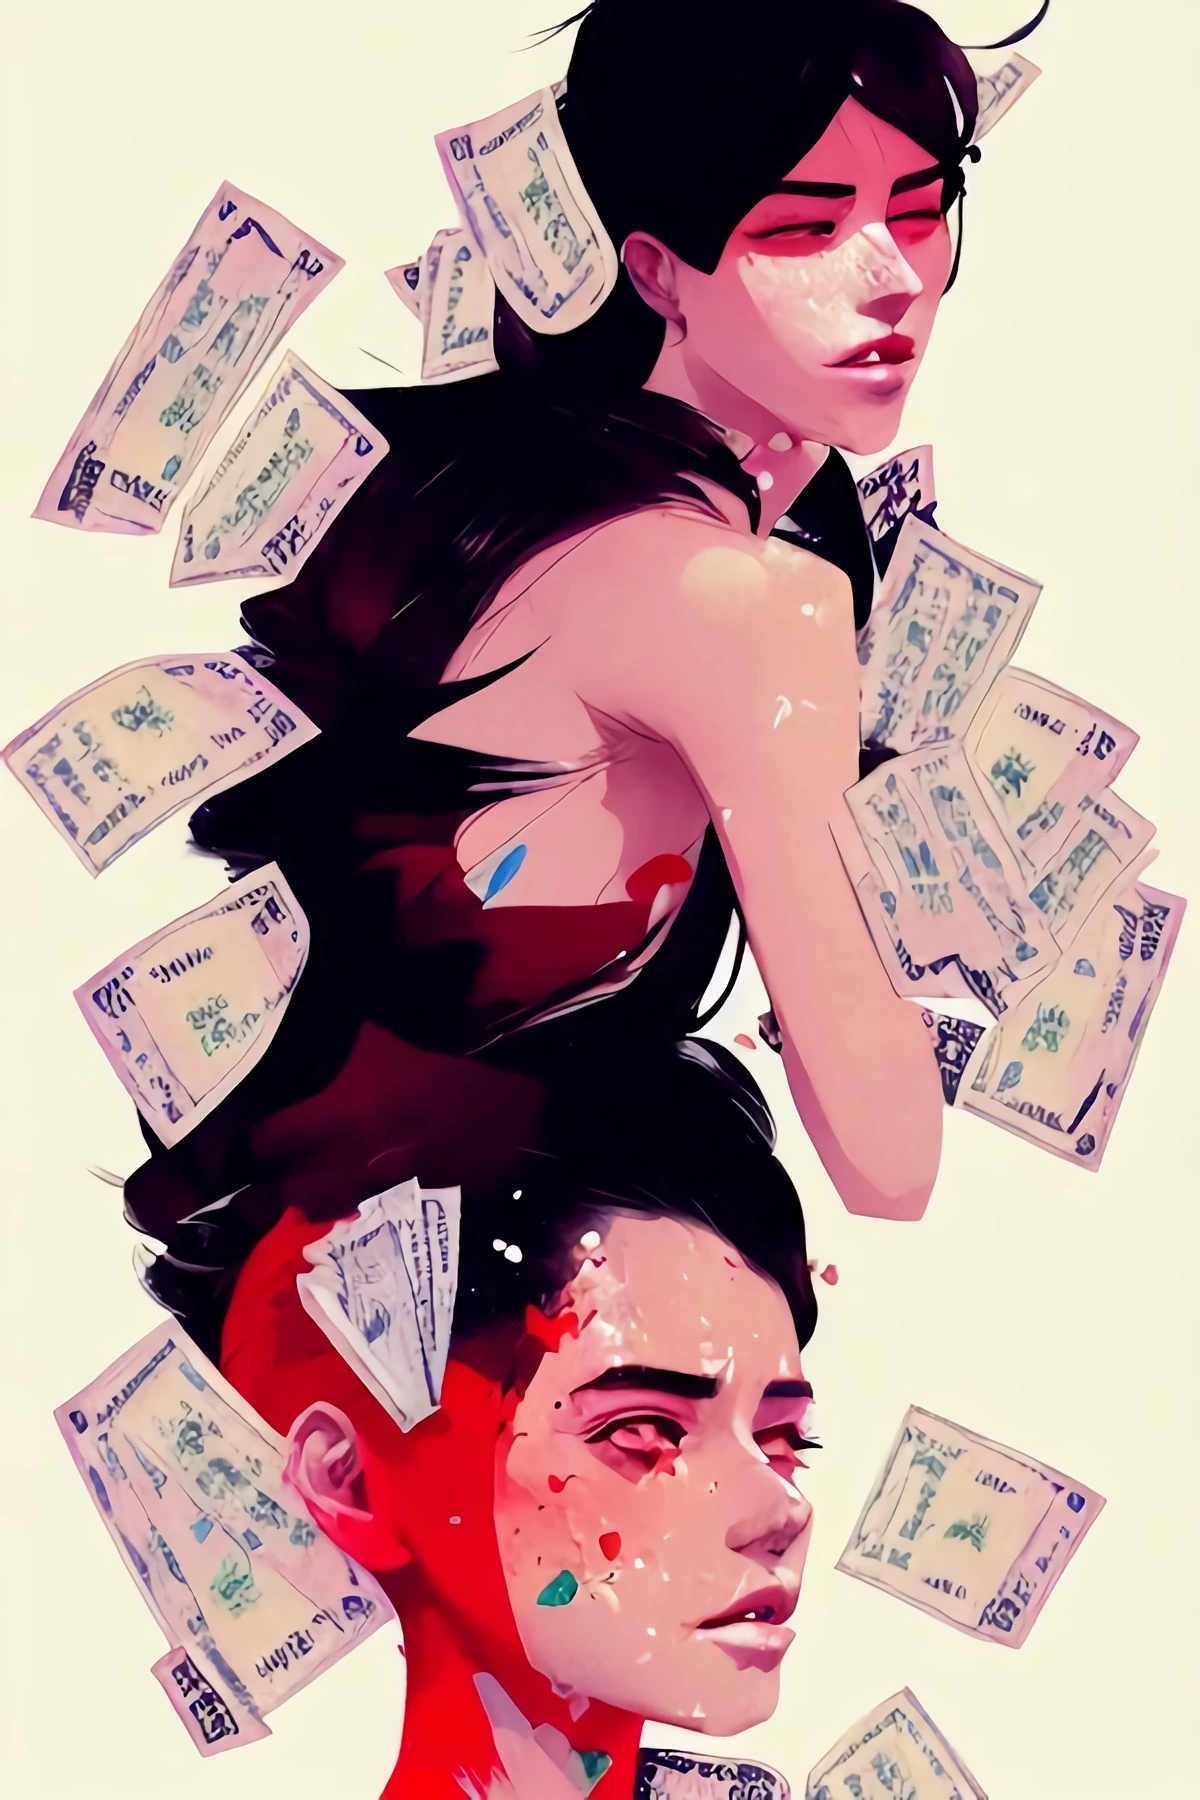 dessin de deux personnages feminins entourees de billets de banque